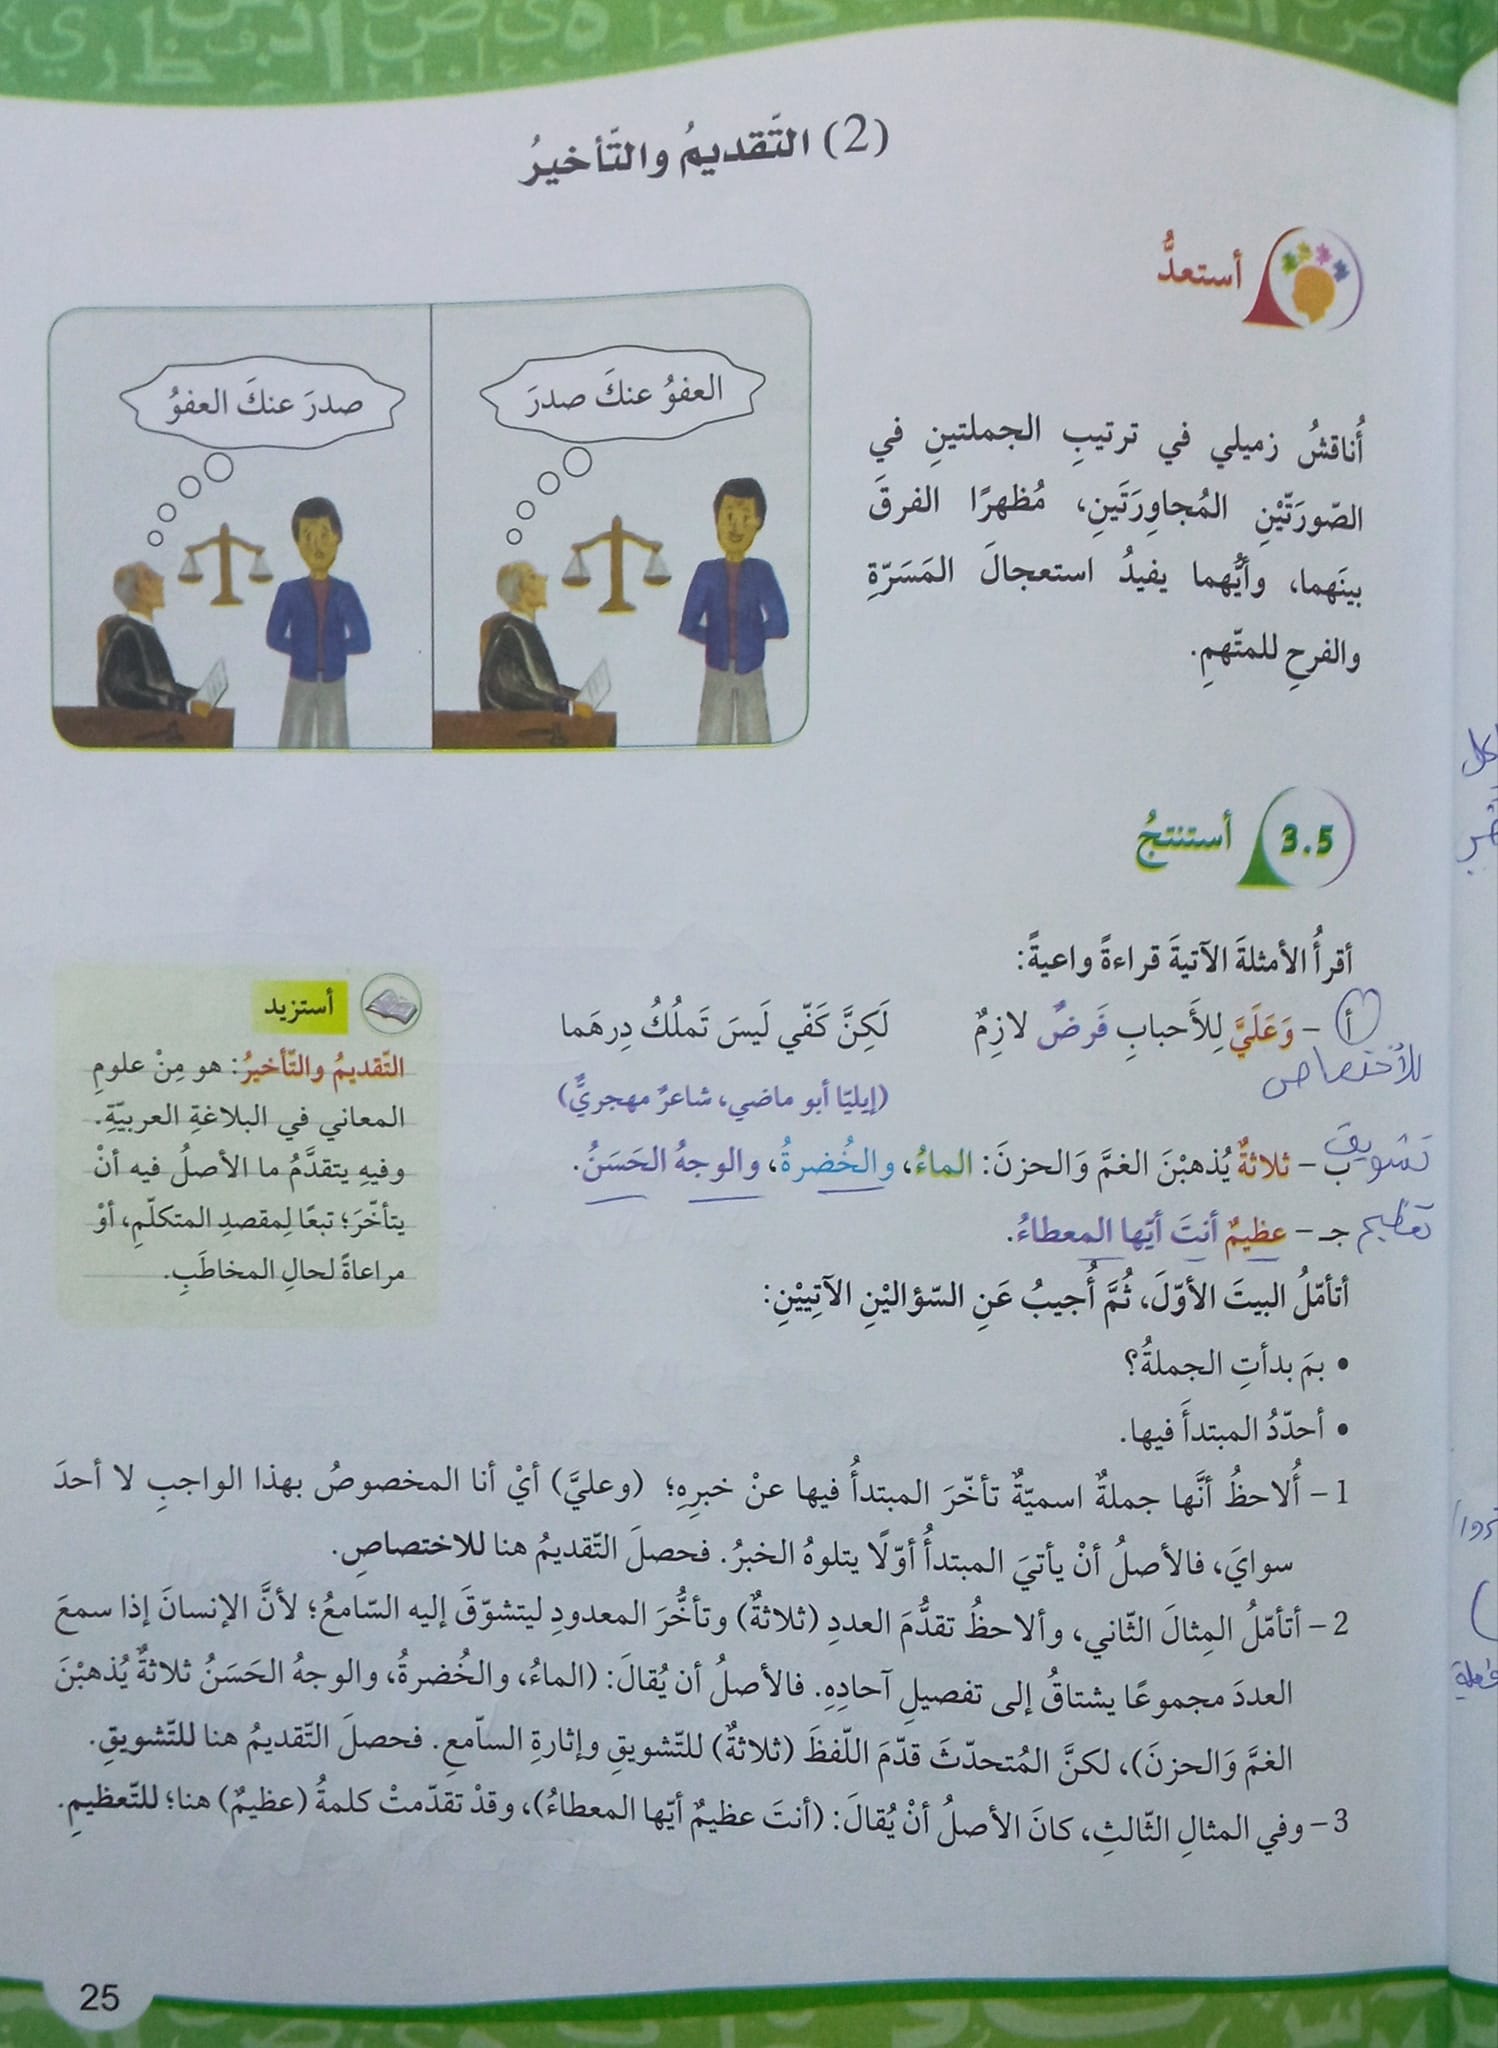 MTc3MTM0MC45MTI3 بالصور شرح قاعدة التقديم و التاخير واجابات اسئلة الكتاب مادة اللغة العربية للصف العاشر الفصل الثاني